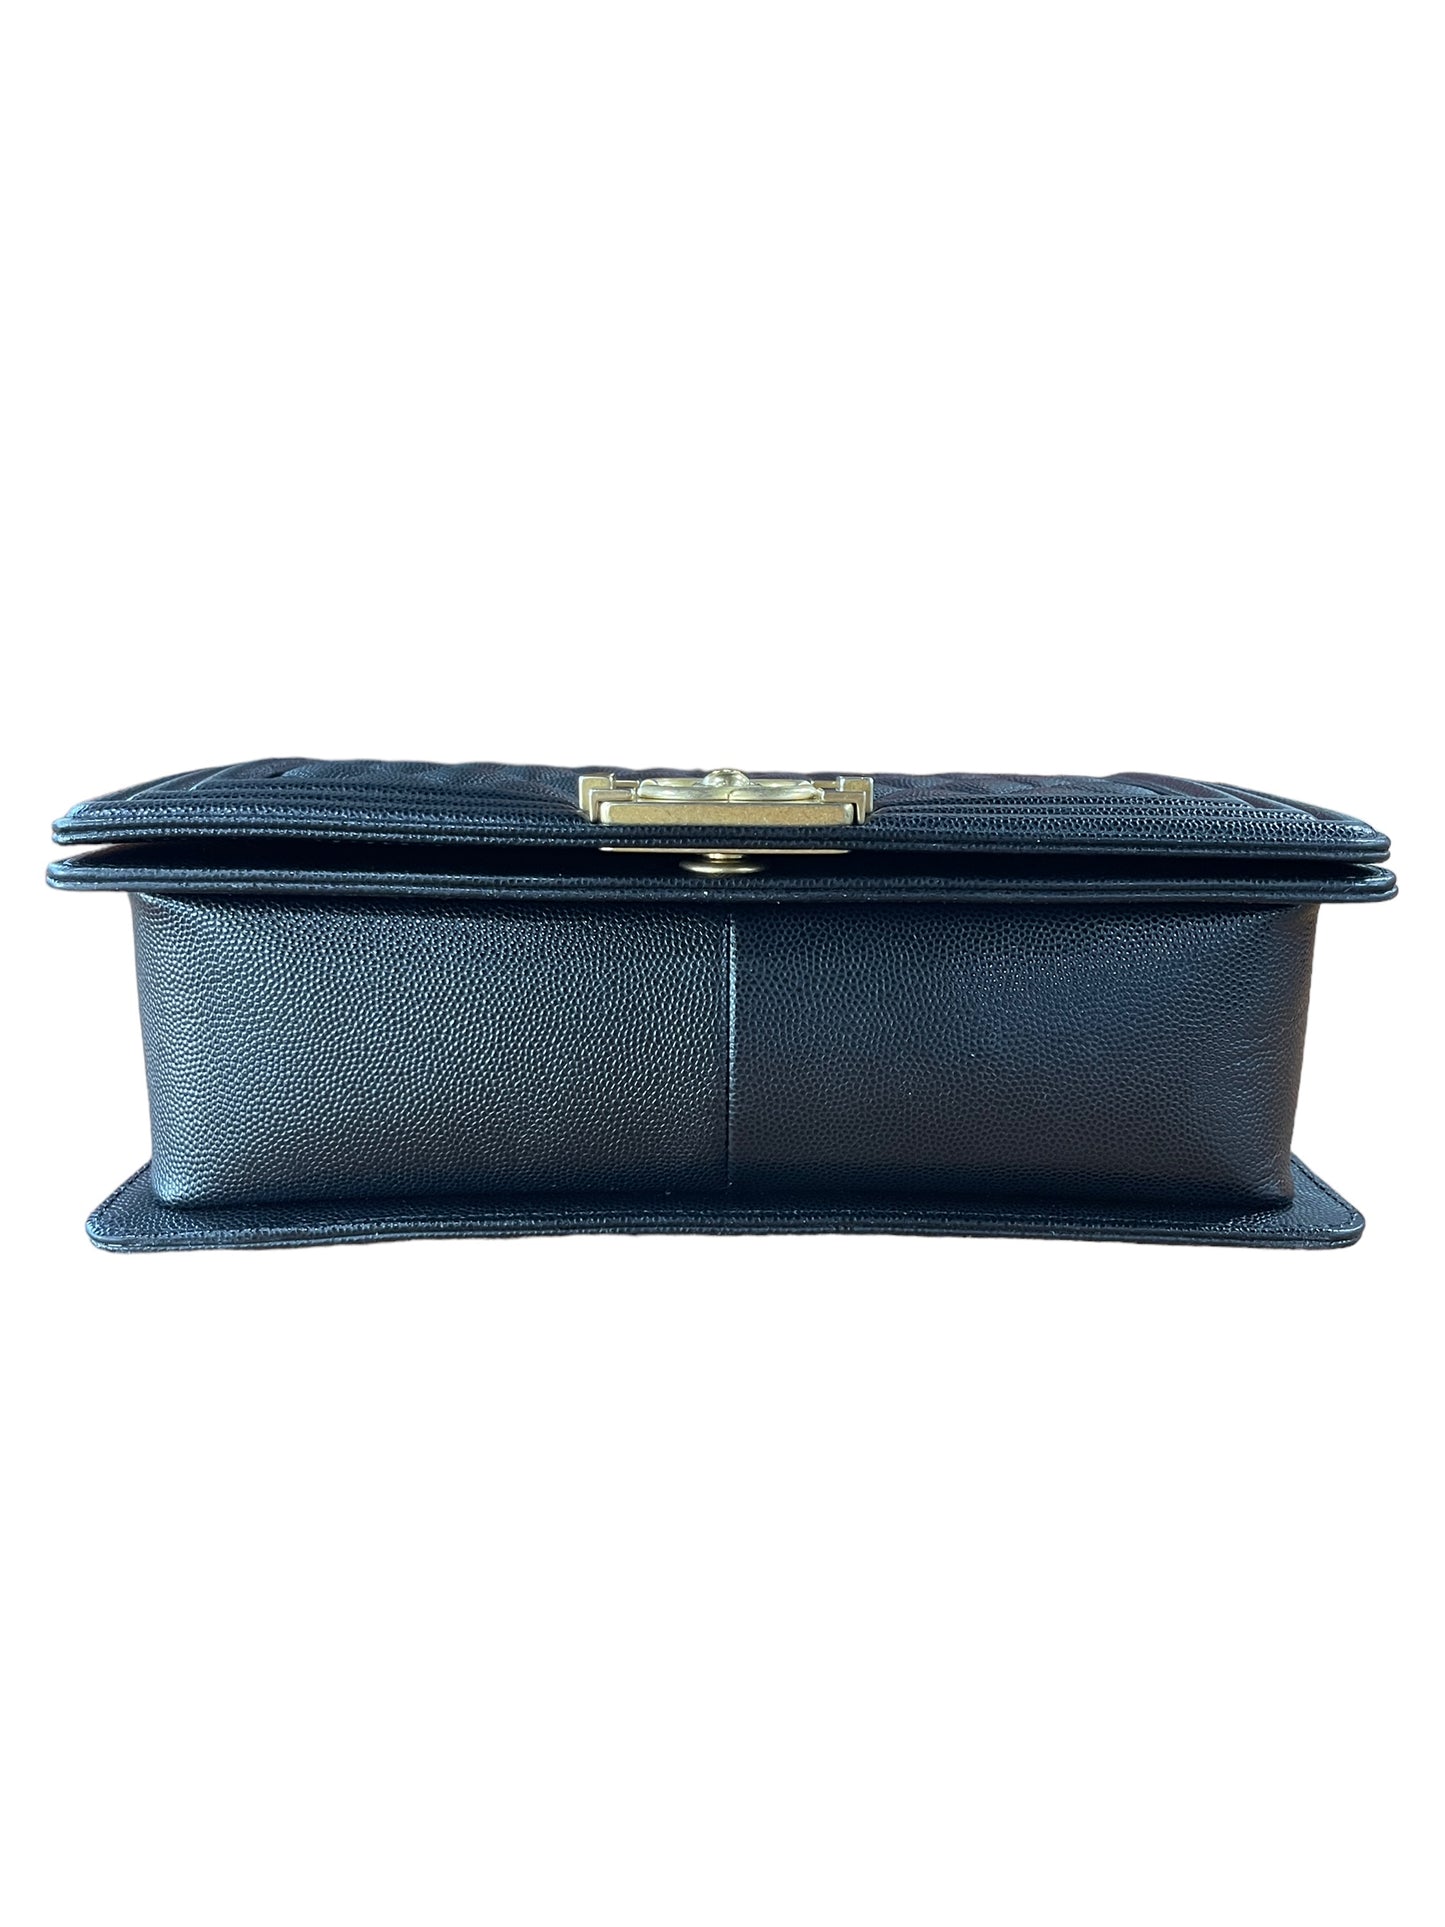 Chanel - Medium Boy Bag in Black 0454139